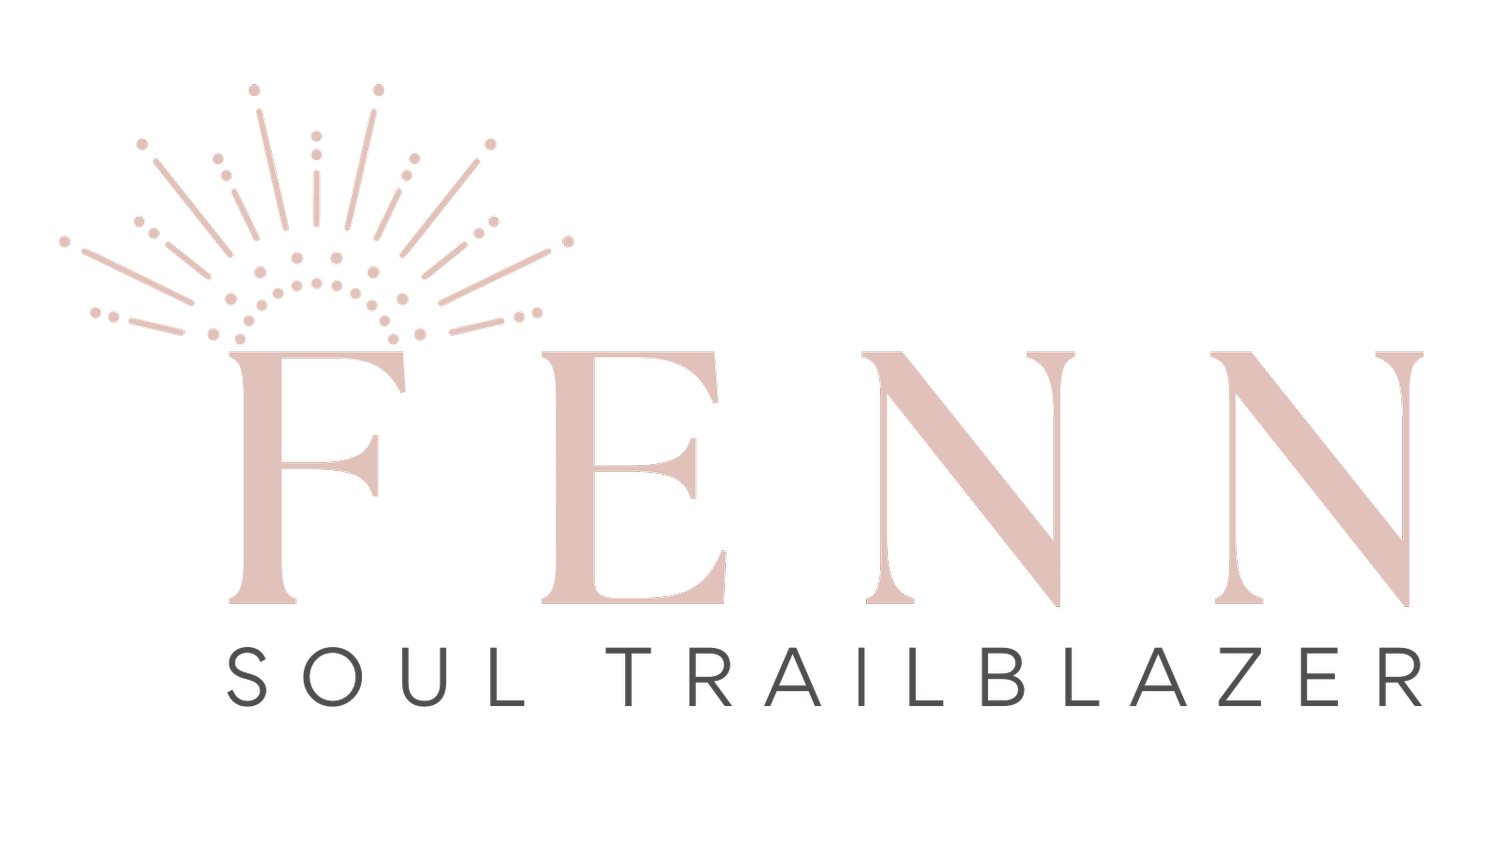 Fenn - Soul Trailblazer